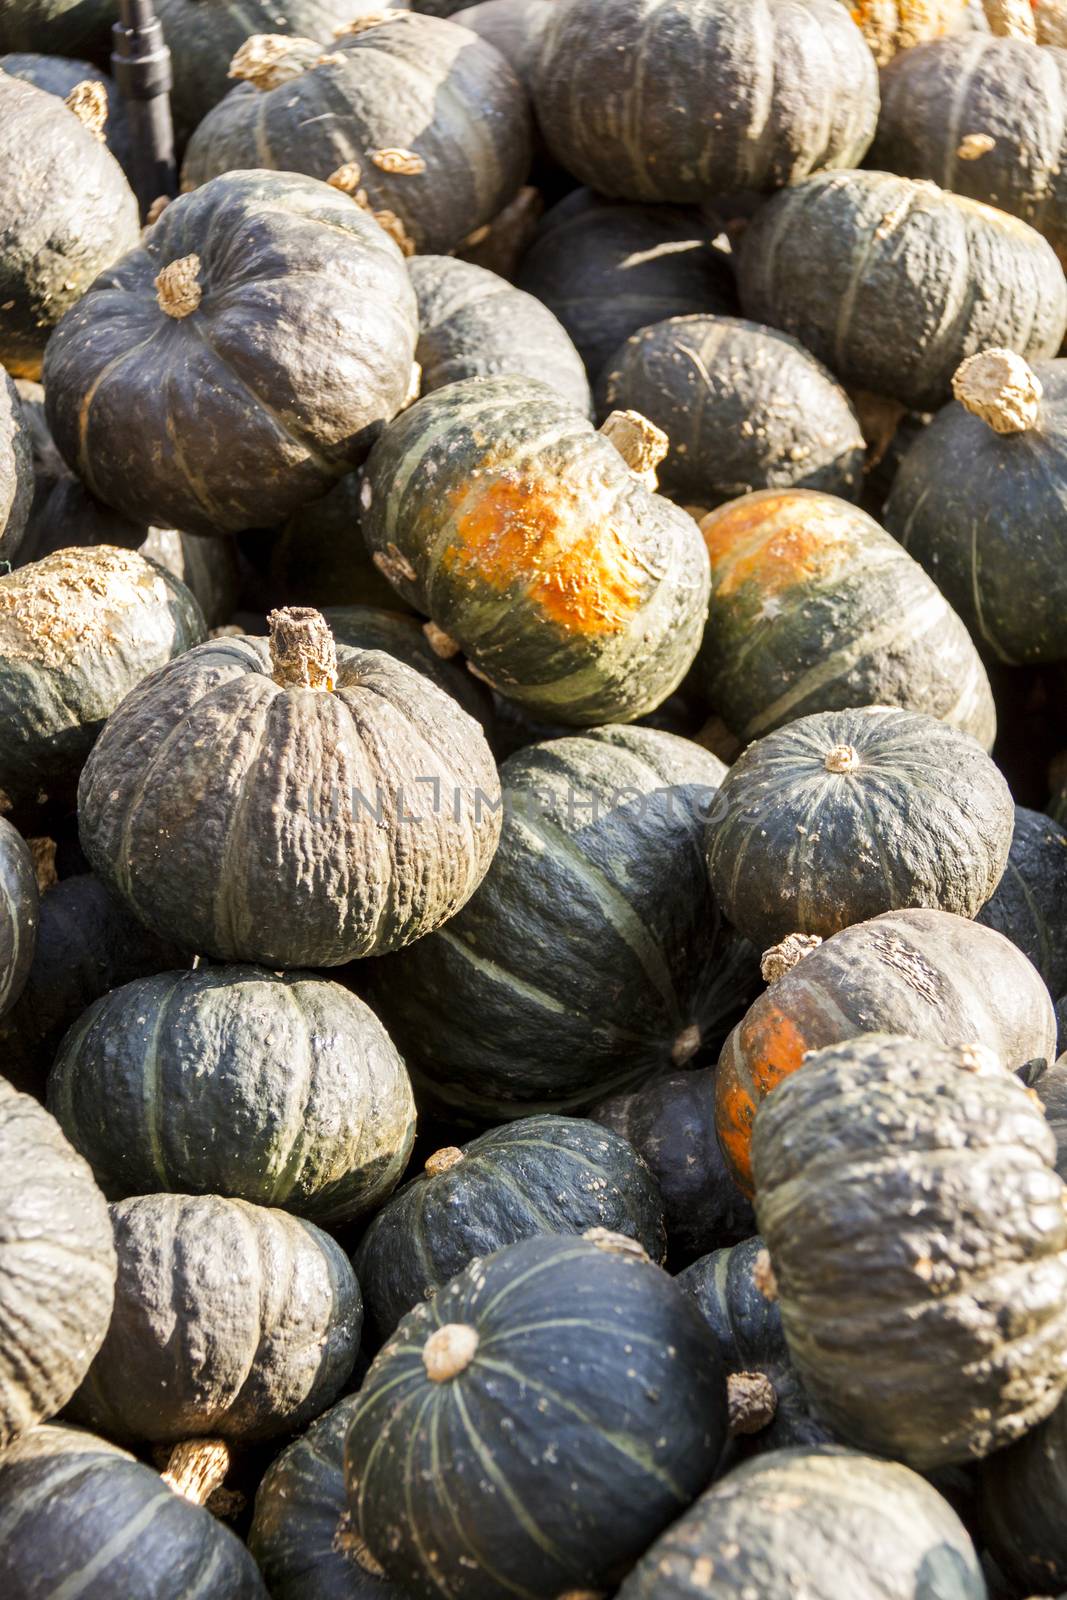 Green Grüner Hokkaido cucurbita pumpkin pumpkins from autumn harvest on a market